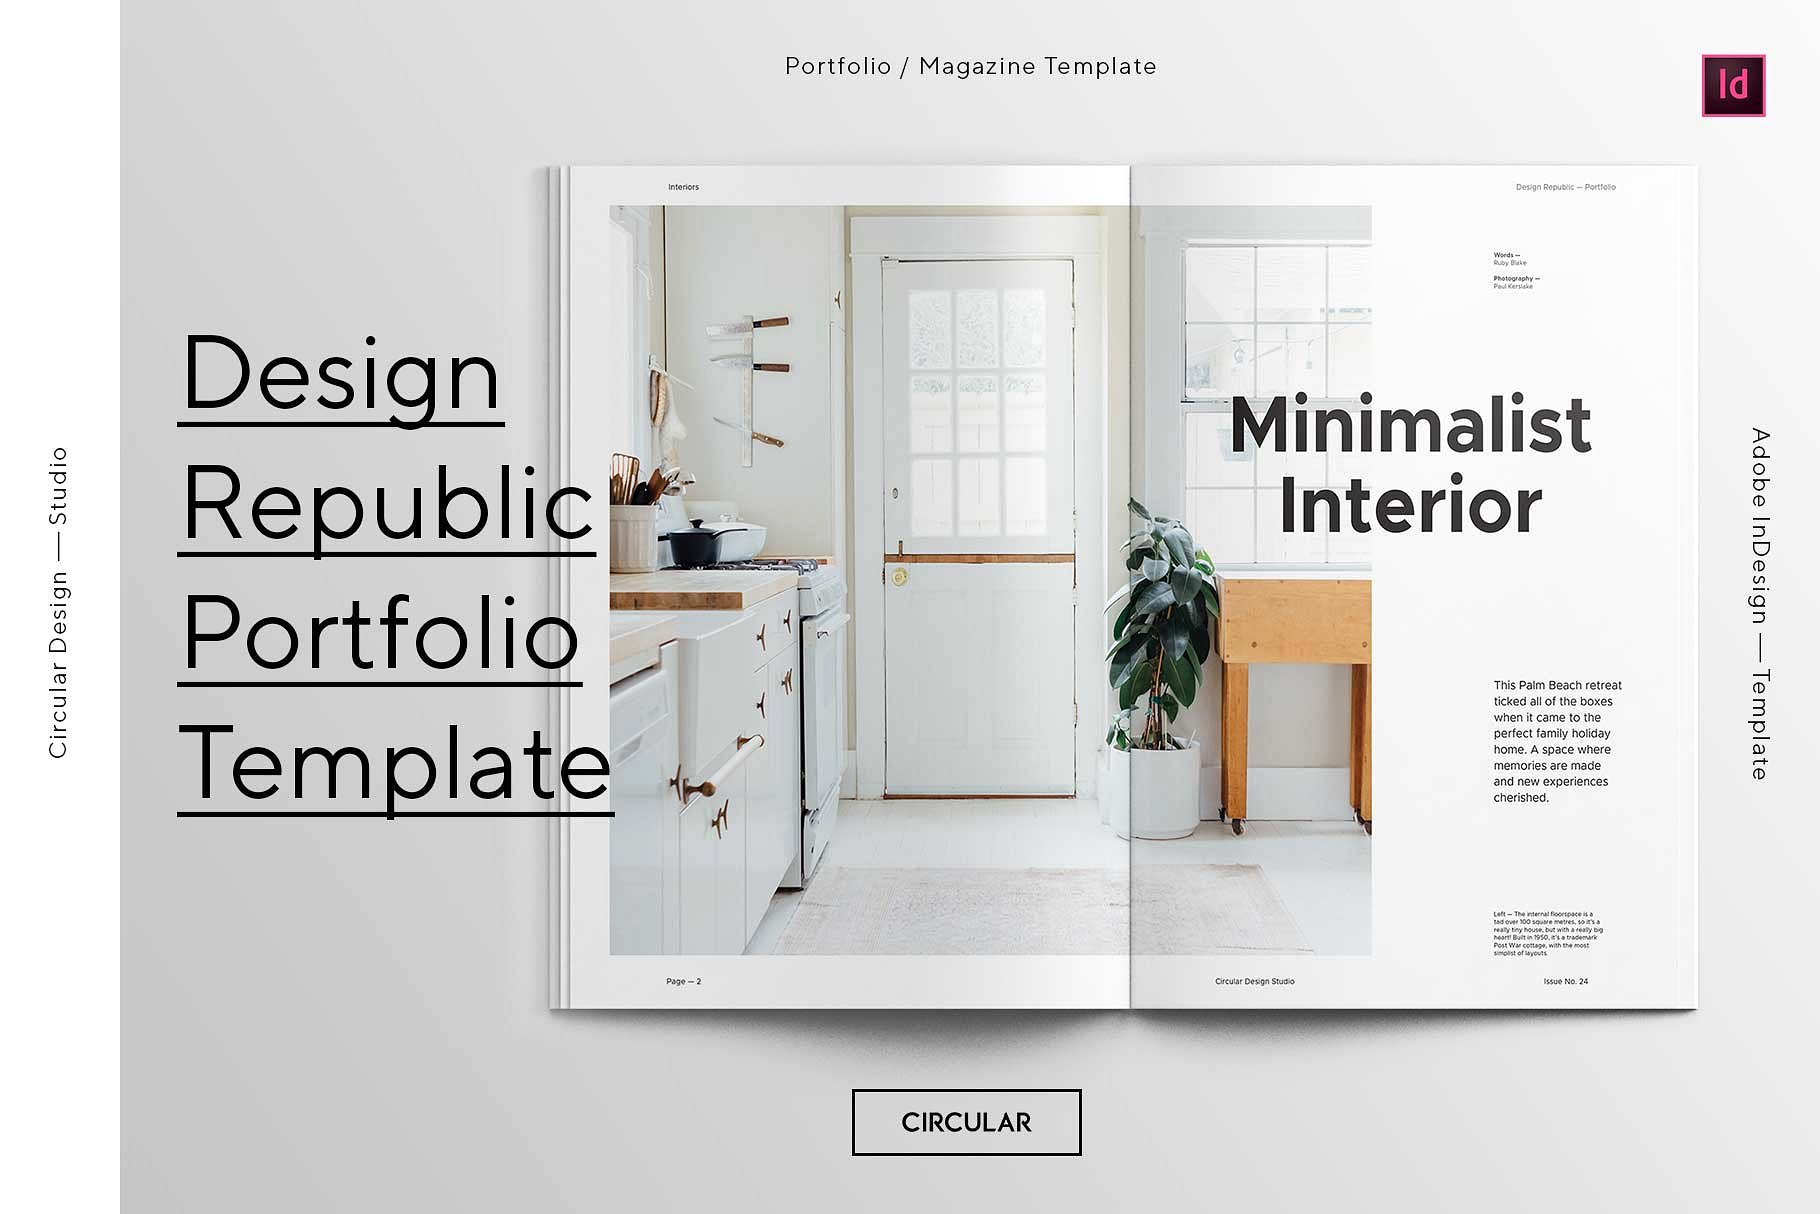 第一素材下午茶：时尚简约风格的画册手册宣传册楼书InDesign设计模板插图